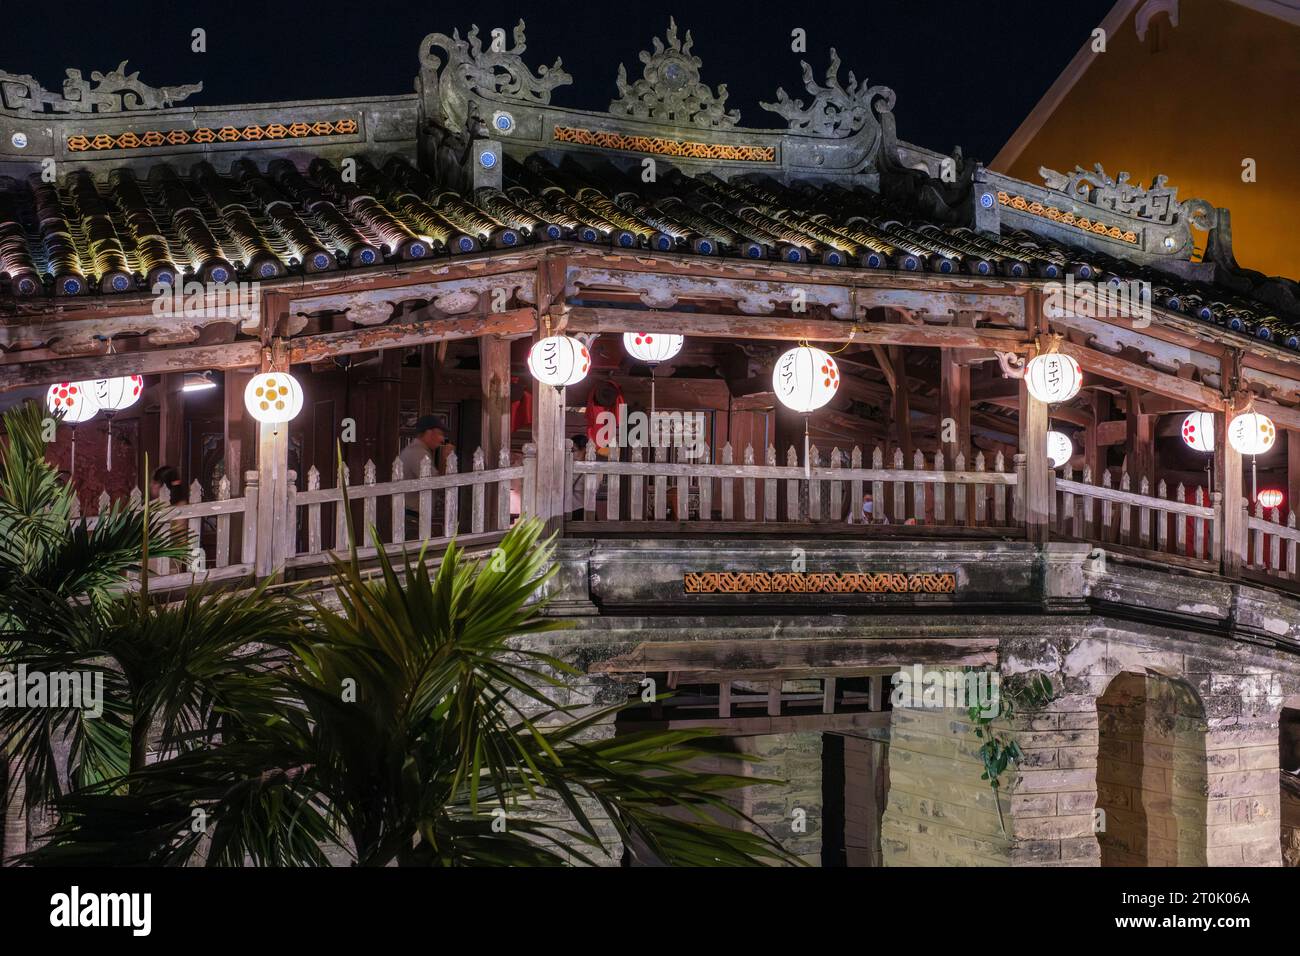 Hoi an, Vietnam. Pont couvert japonais, vue de nuit. Banque D'Images